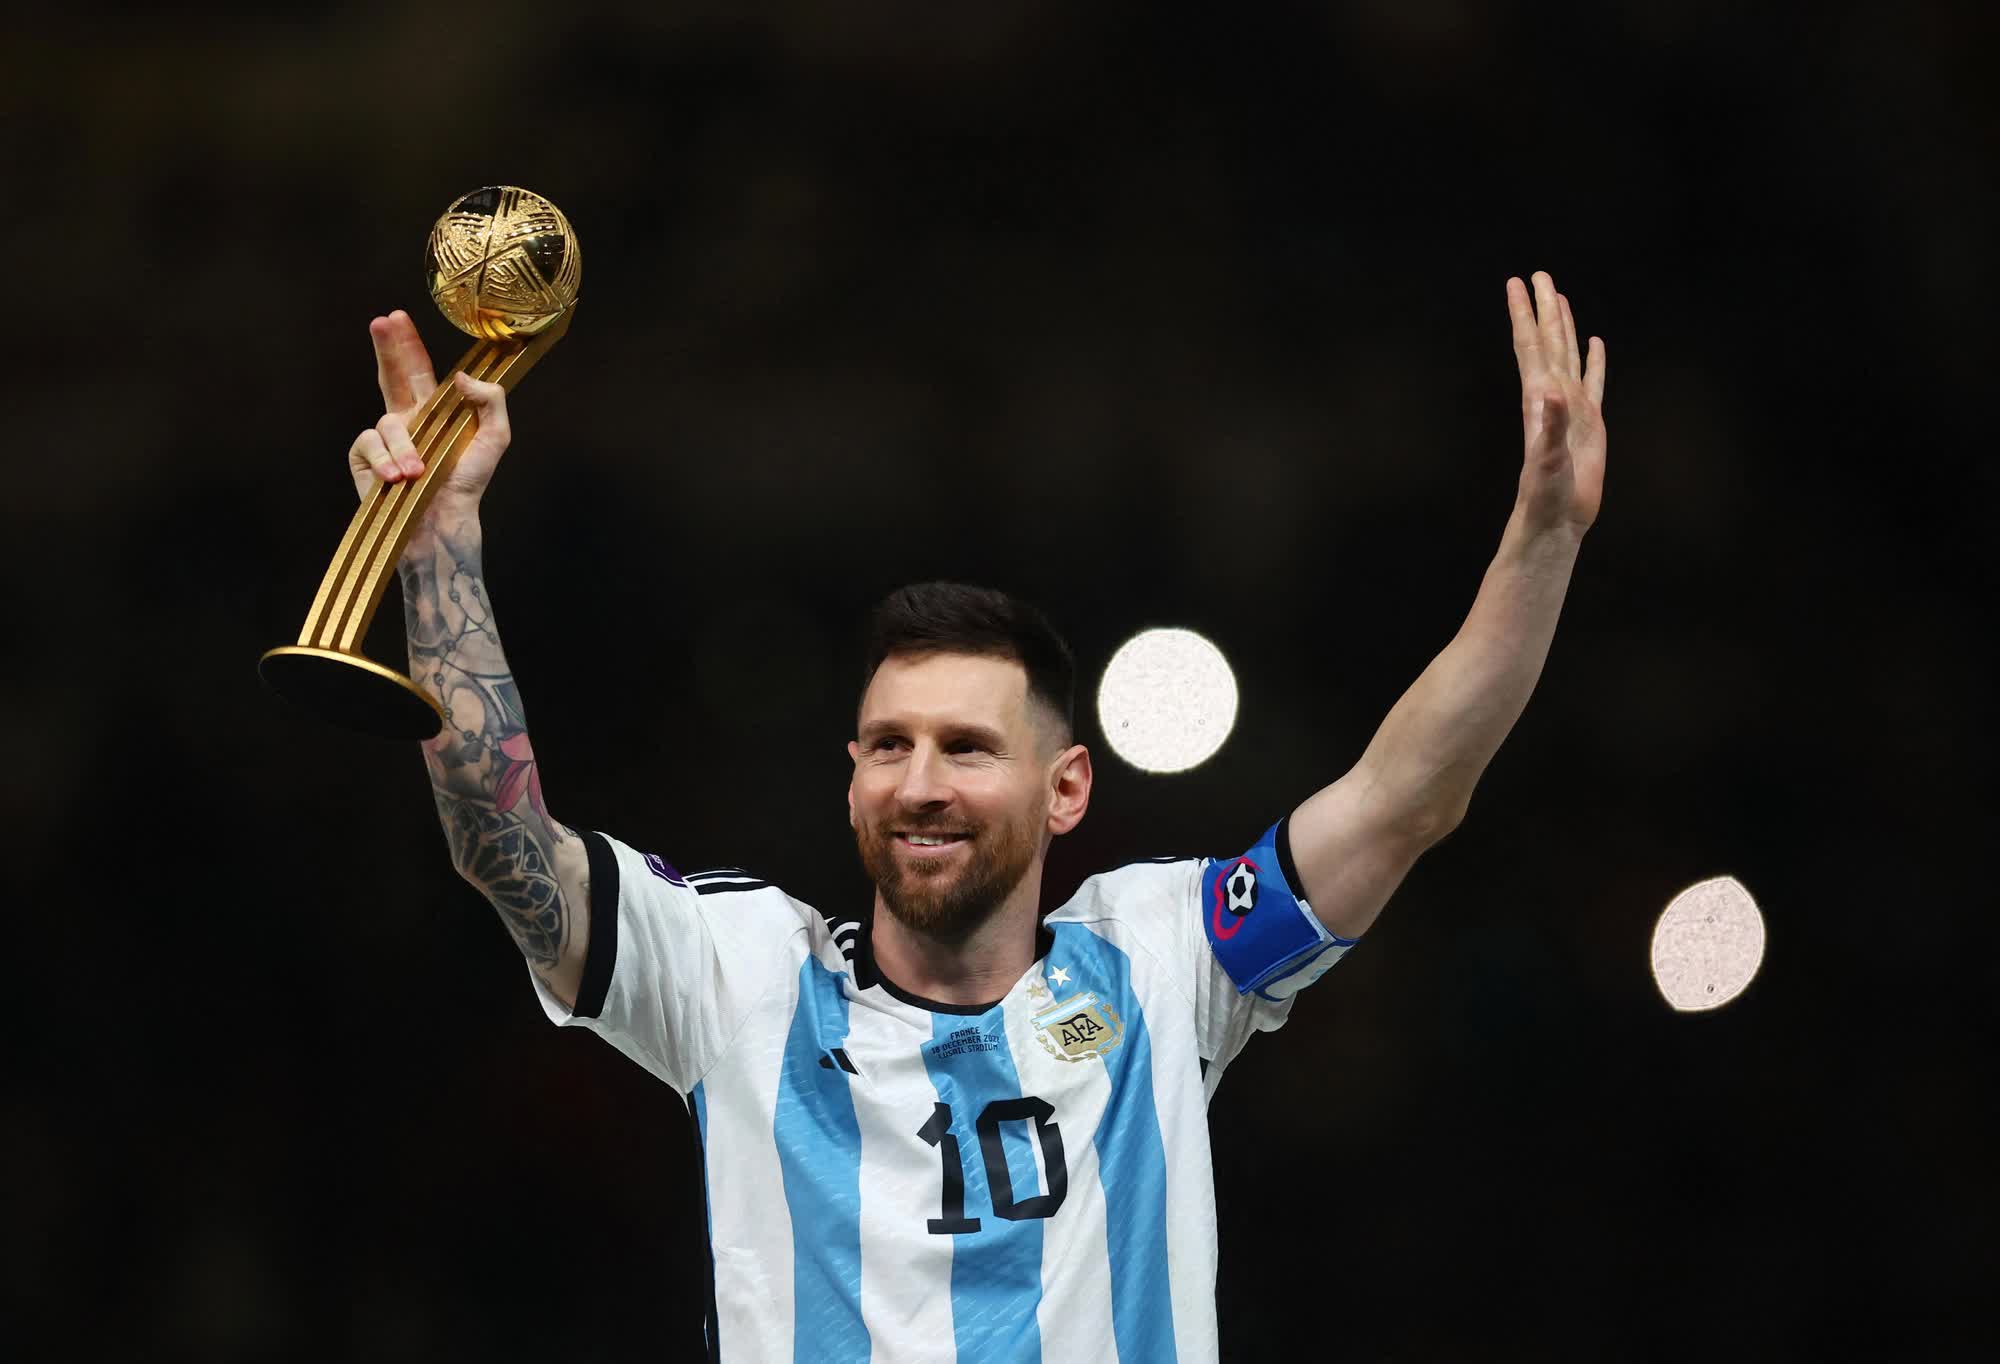 Hãy cùng chiêm ngưỡng những khoảnh khắc vĩ đại của Messi trên sân cỏ. Anh là một huyền thoại của làng bóng đá, và những pha bóng của anh luôn khiến người xem nghẹt thở và say mê.